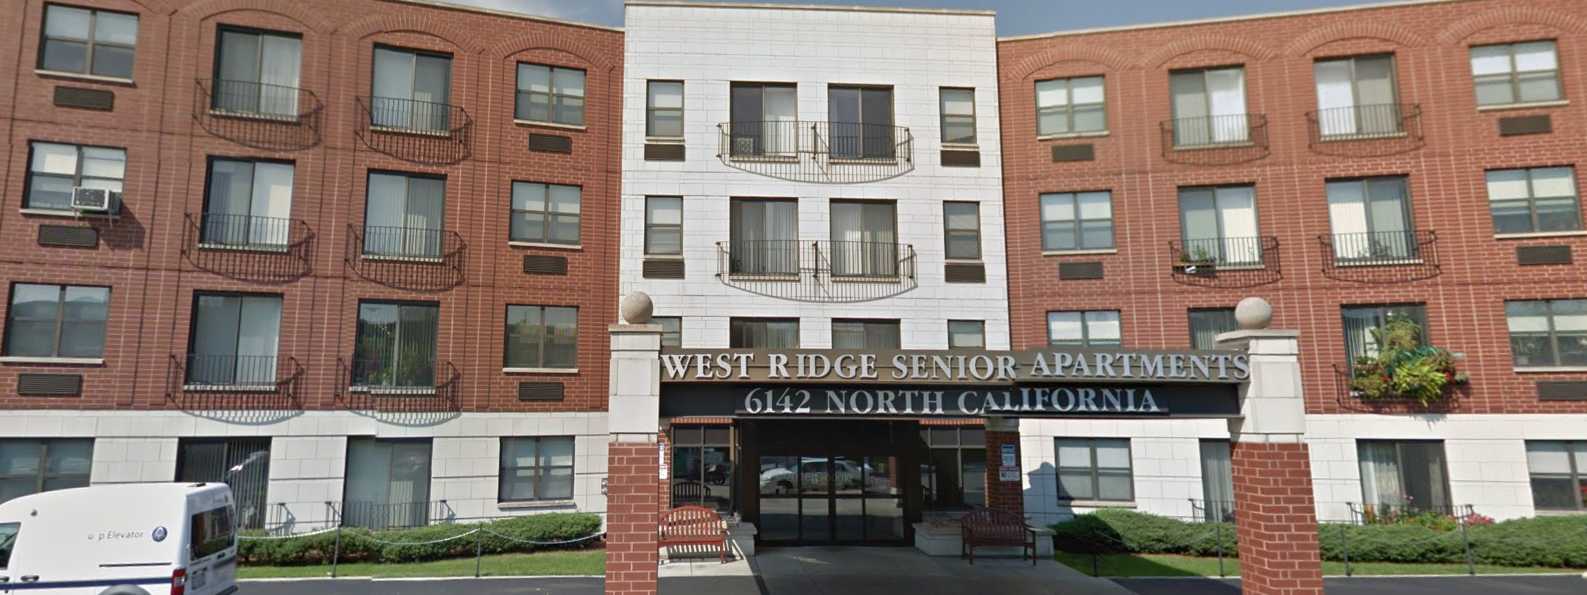 West Ridge Senior Apartments